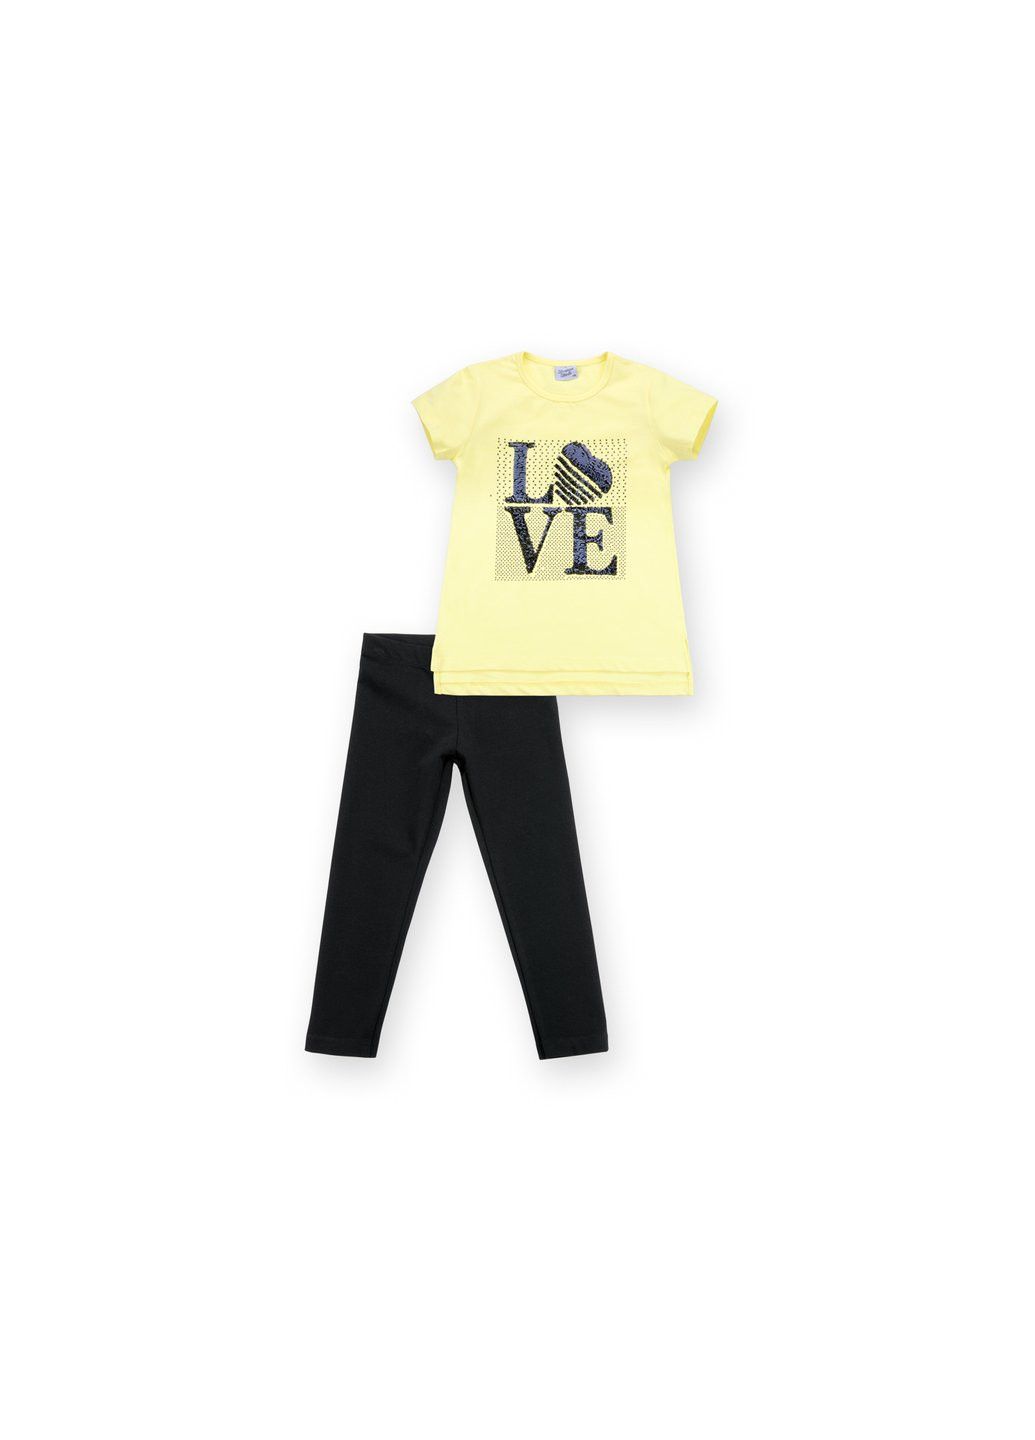 Комбинированный летний набор детской одежды с надписью "love" из пайеток (8307-128g-yellow) Breeze